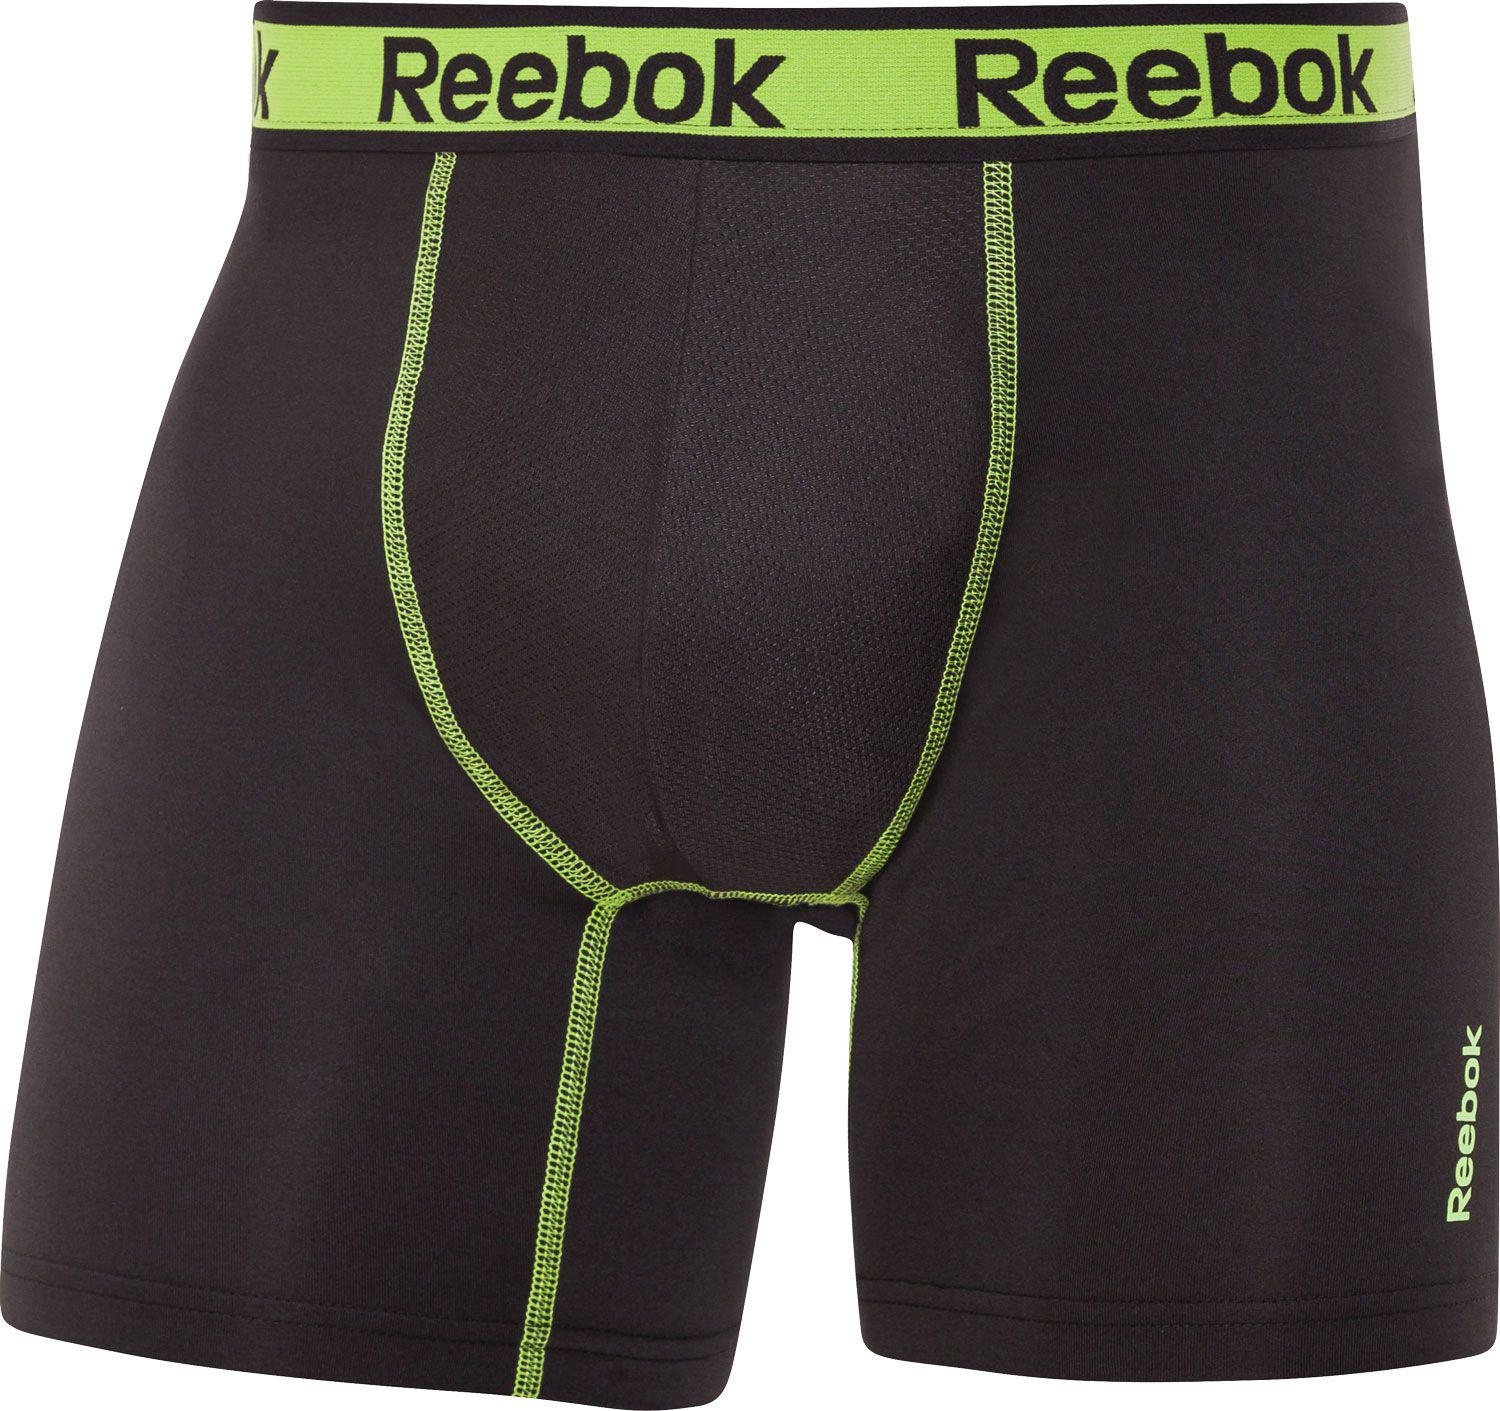 reebok performance boxer briefs 9 inch